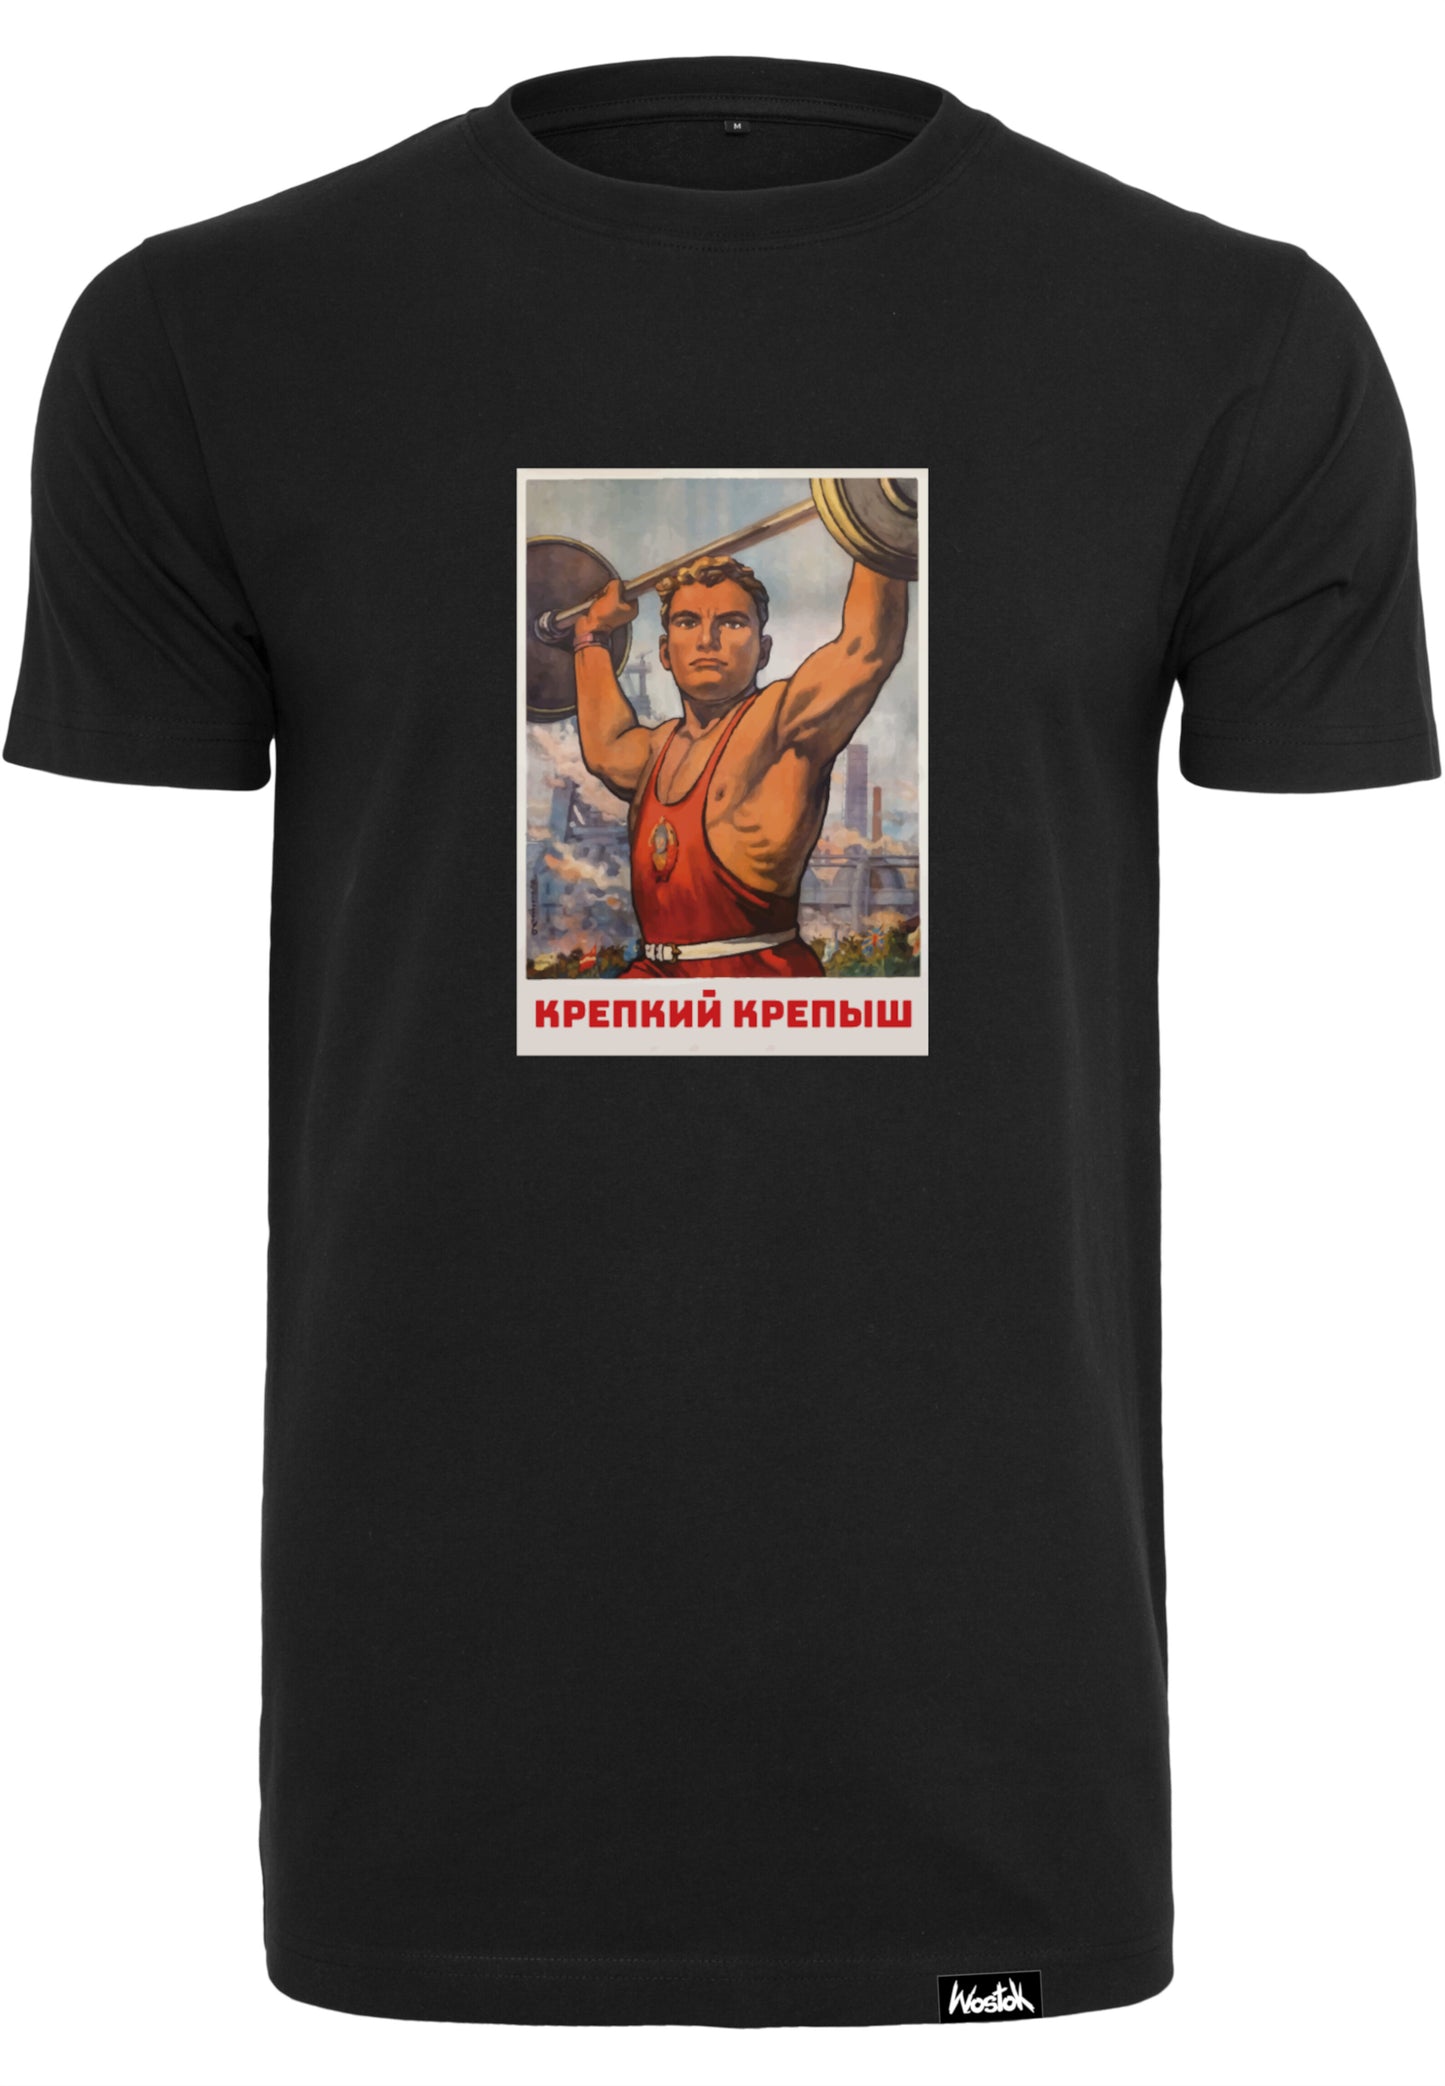 Krepysch T-Shirt